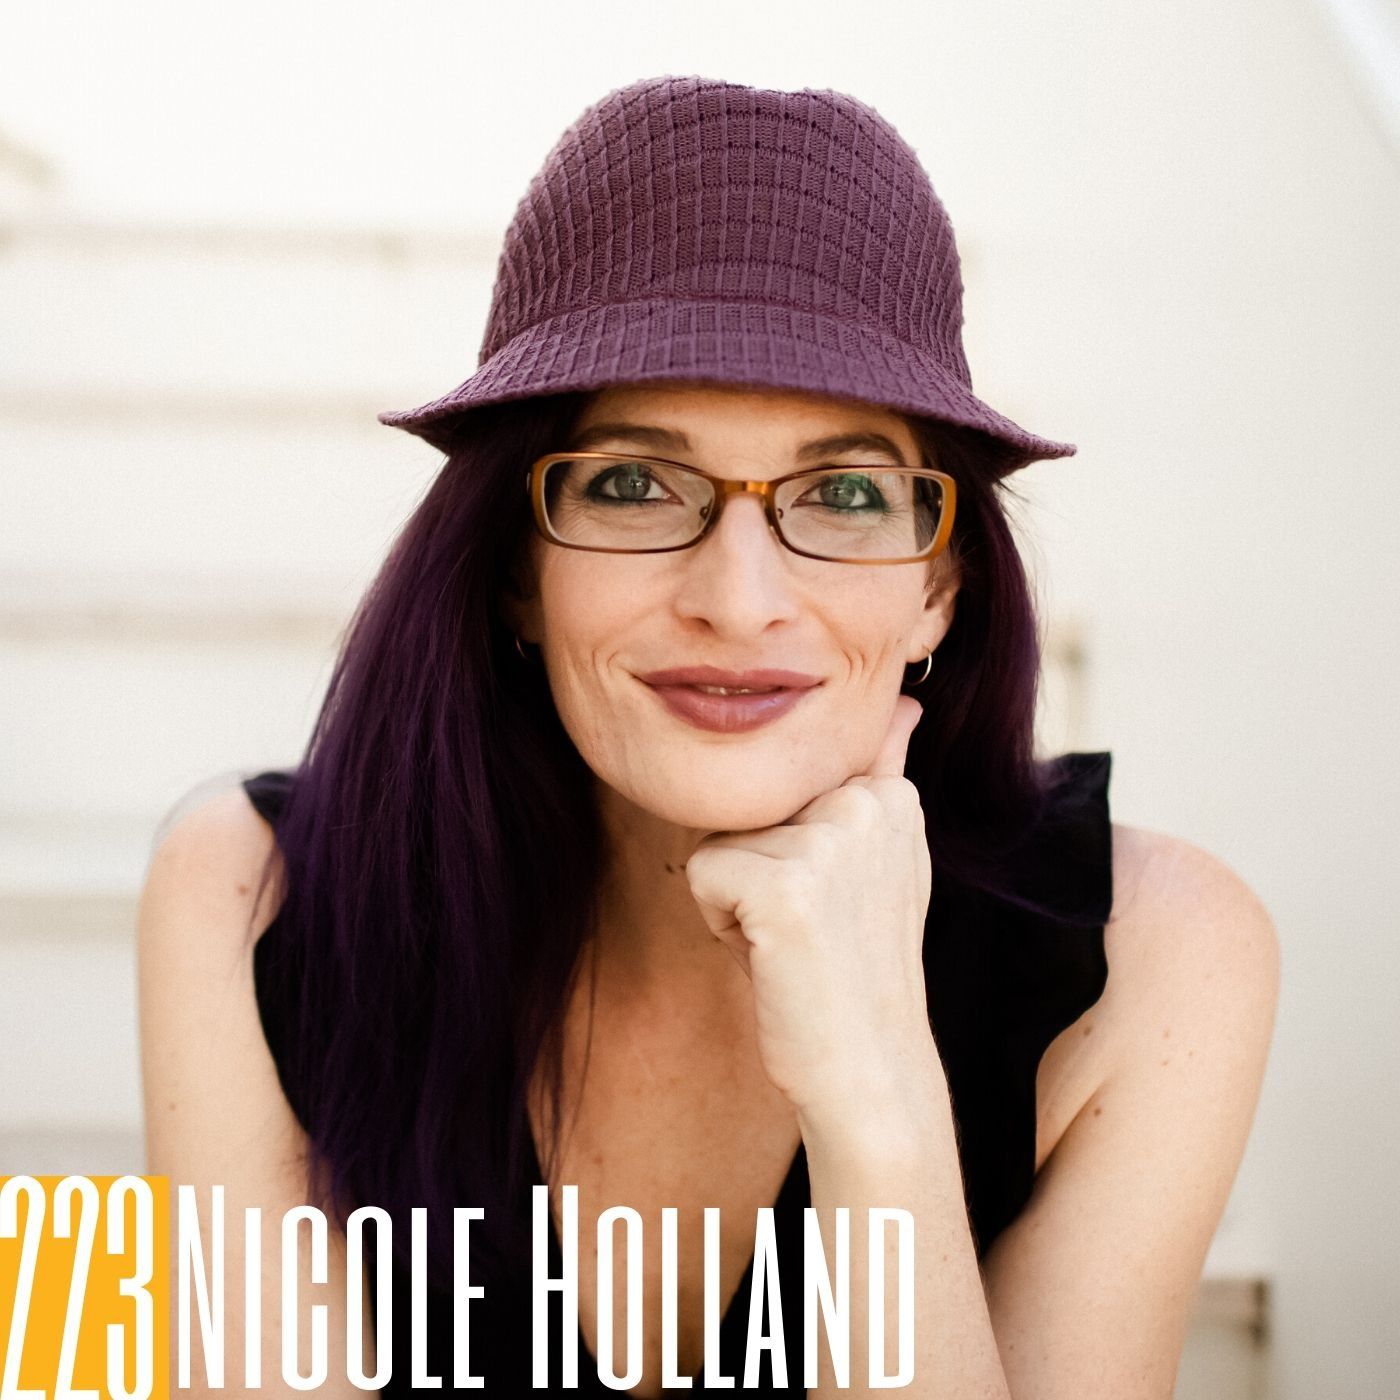 223 Nicole Holland - Mindset Over Everything